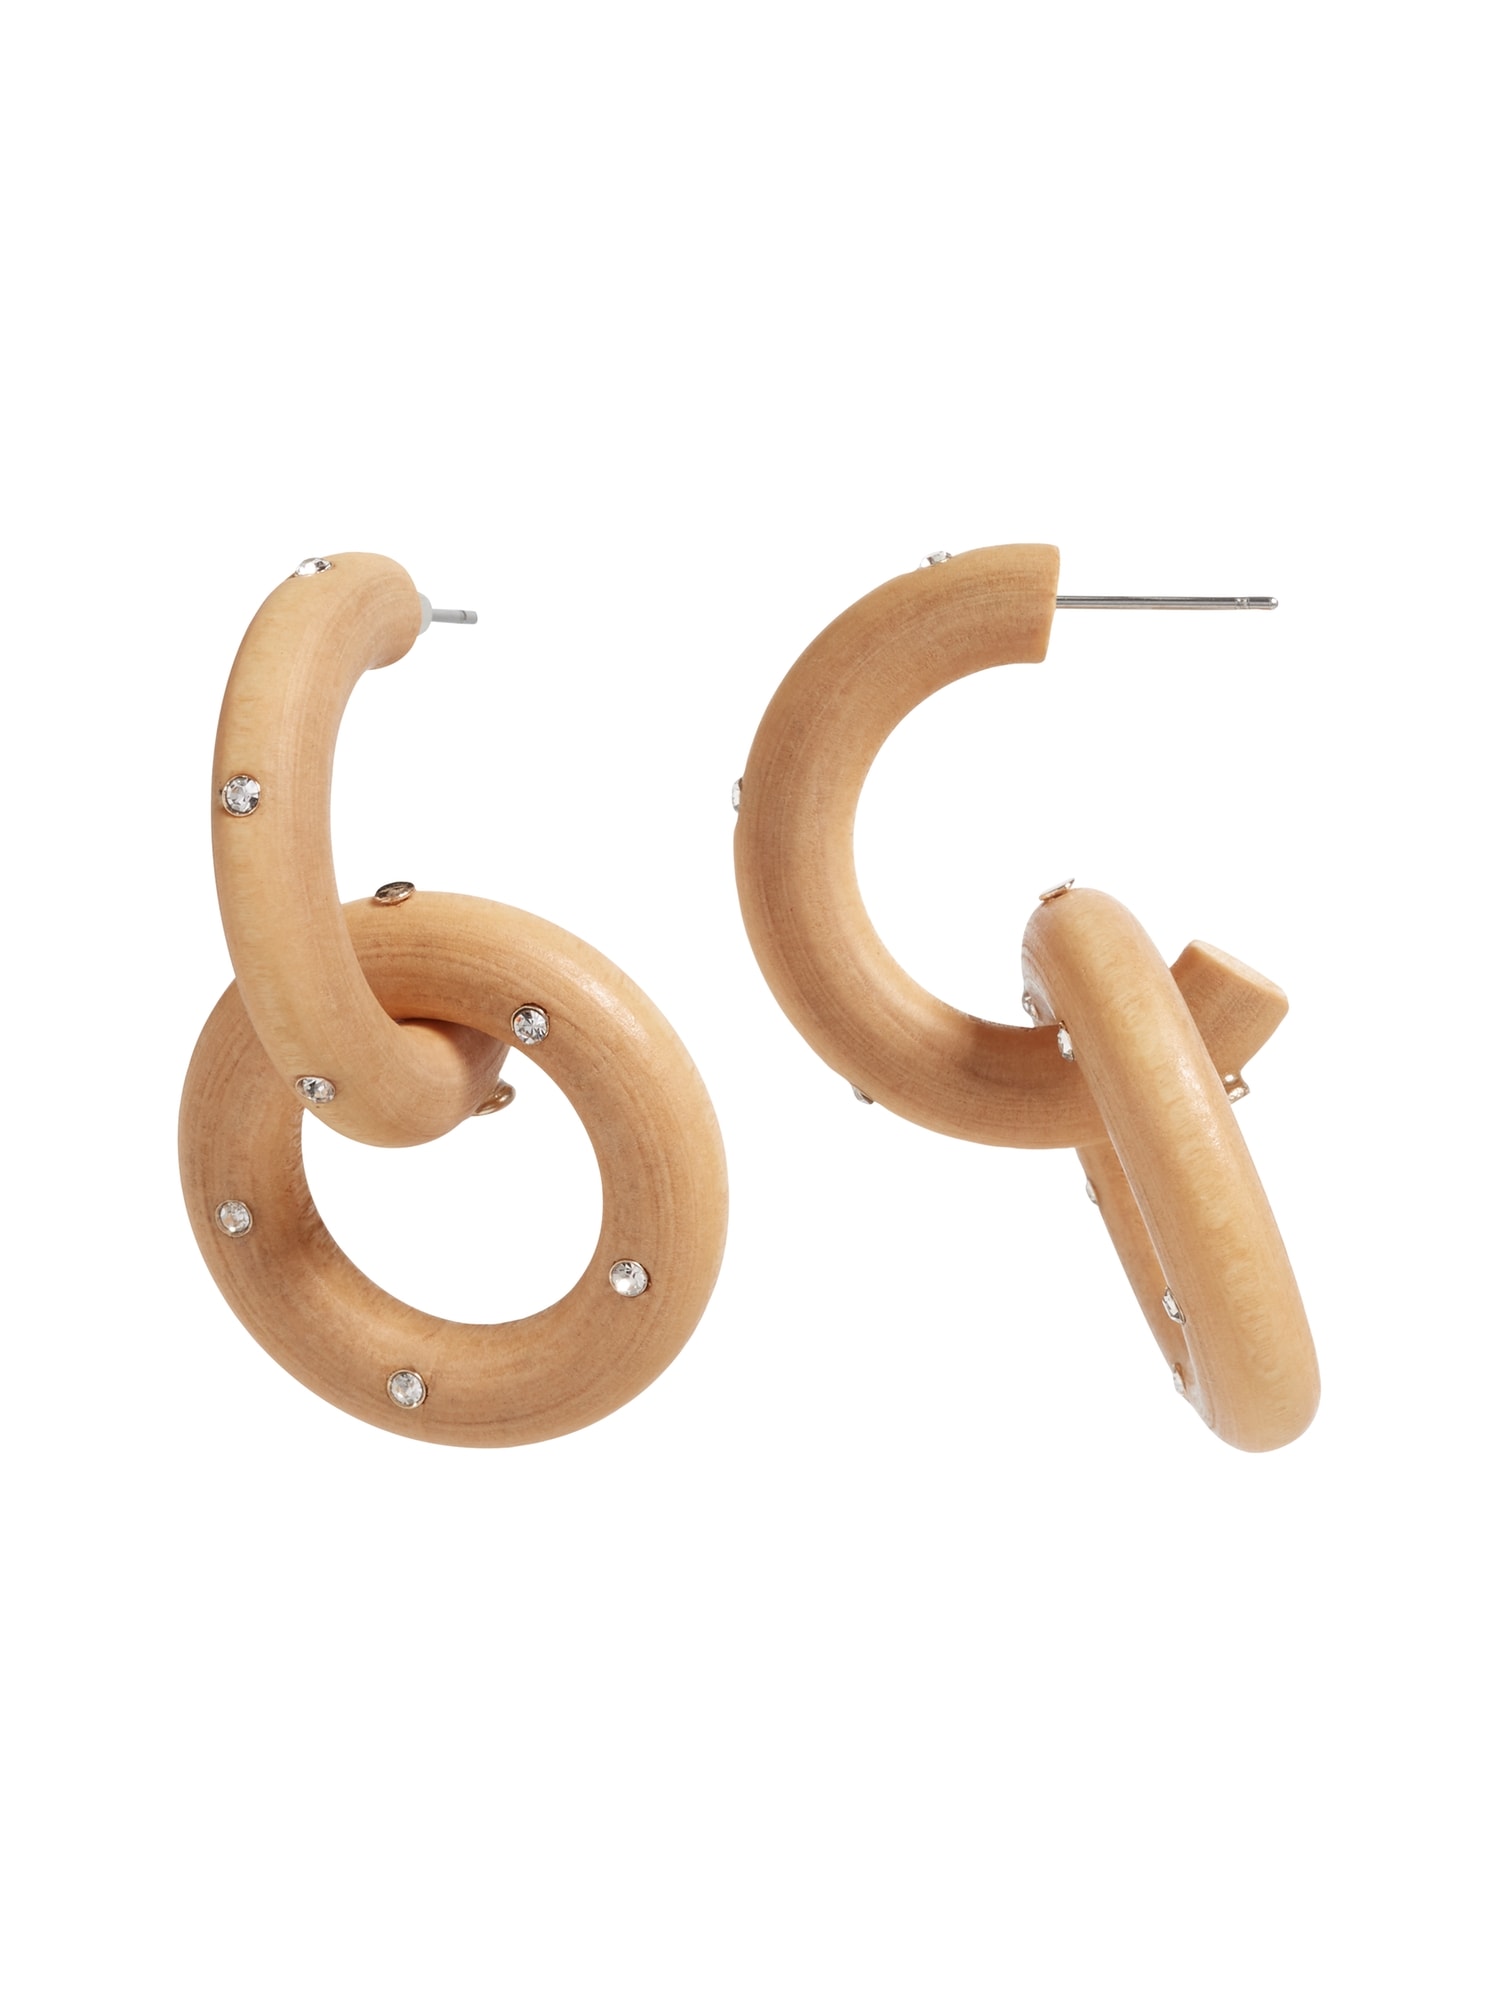 Stacked Wood Hoop Earrings